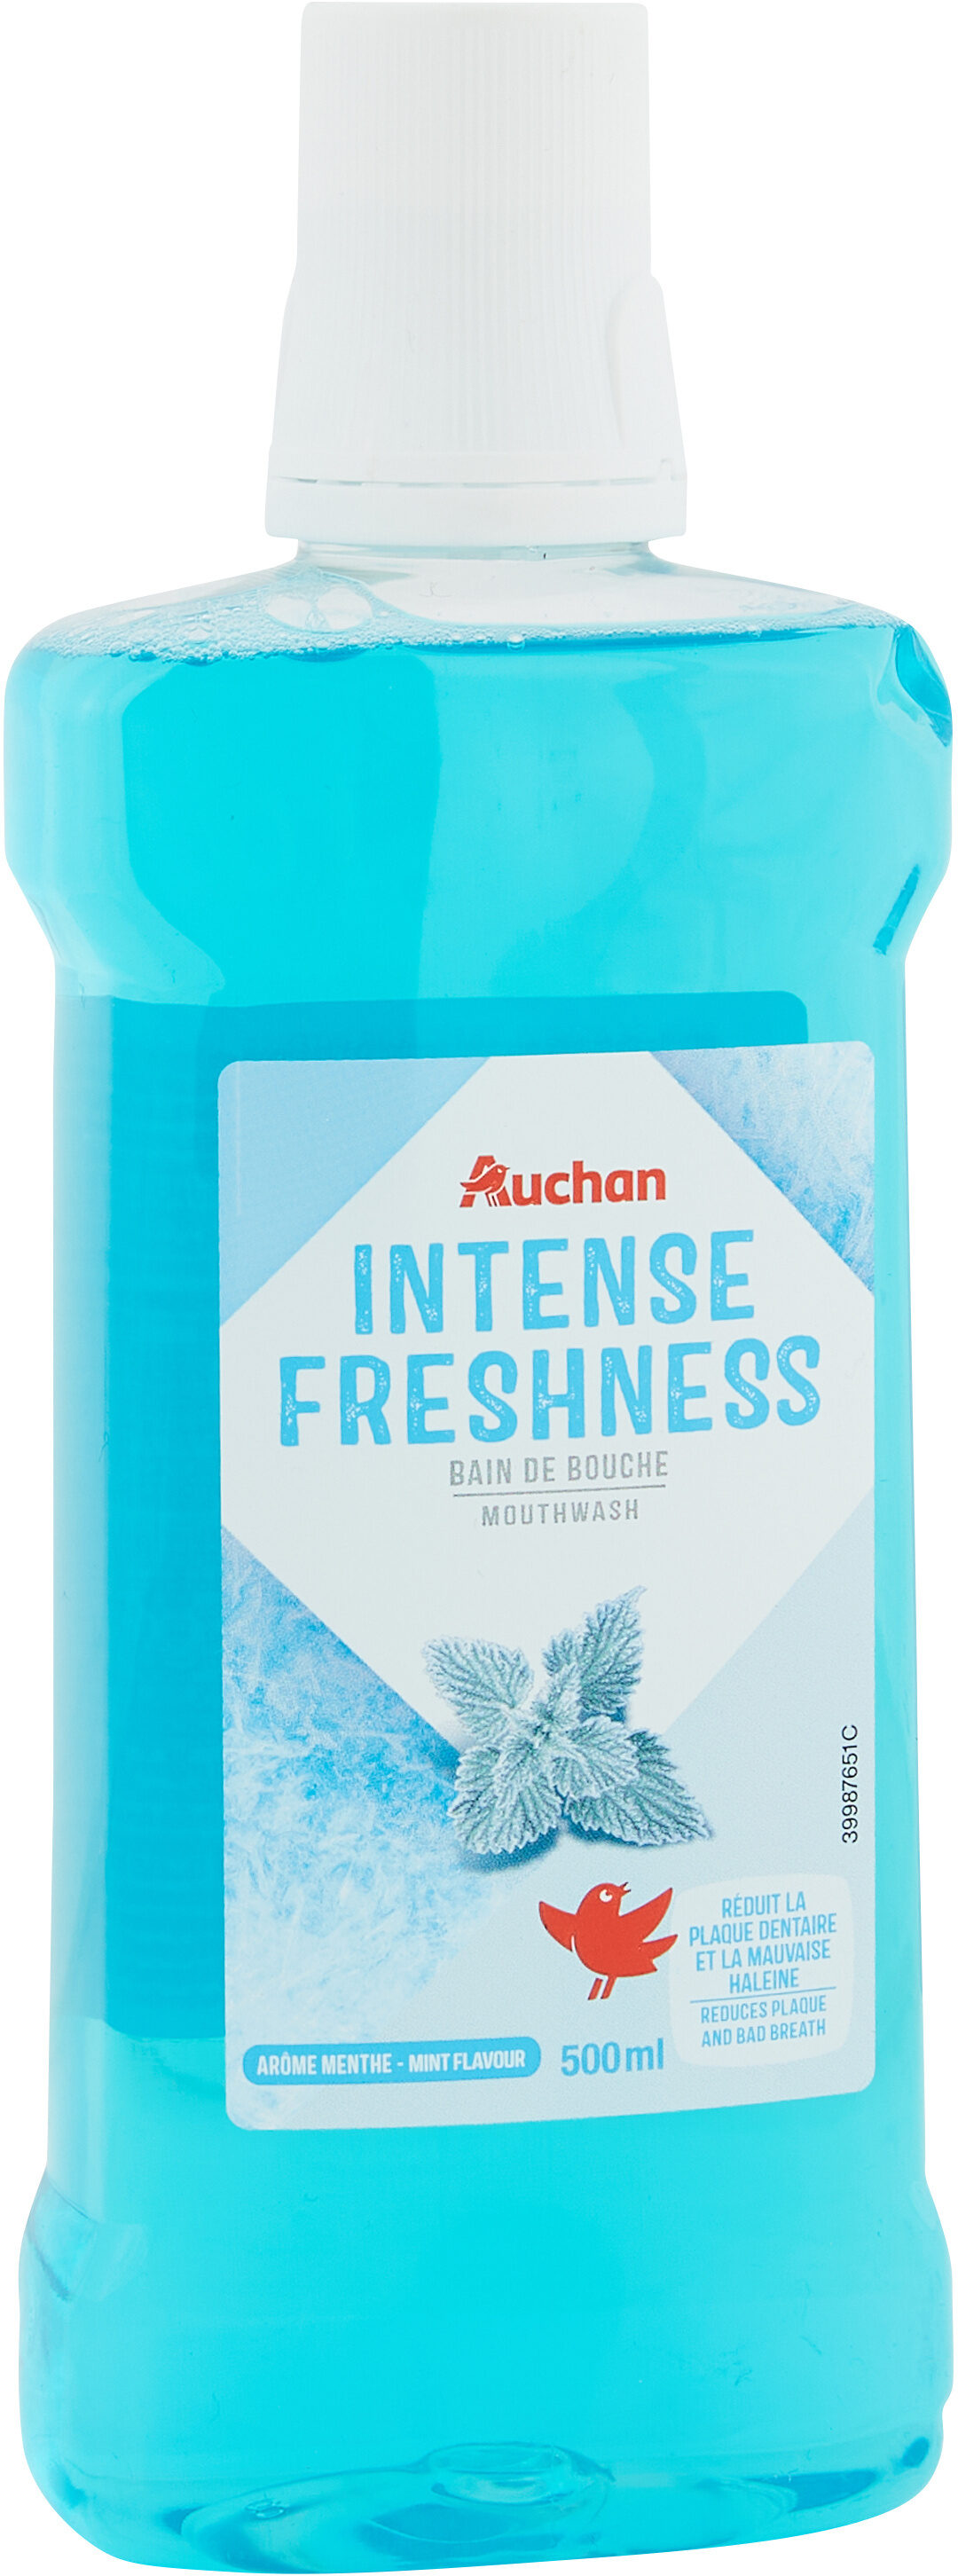 Auchan - bain de bouche - fraicheur intense - 500ml - Tuote - fr